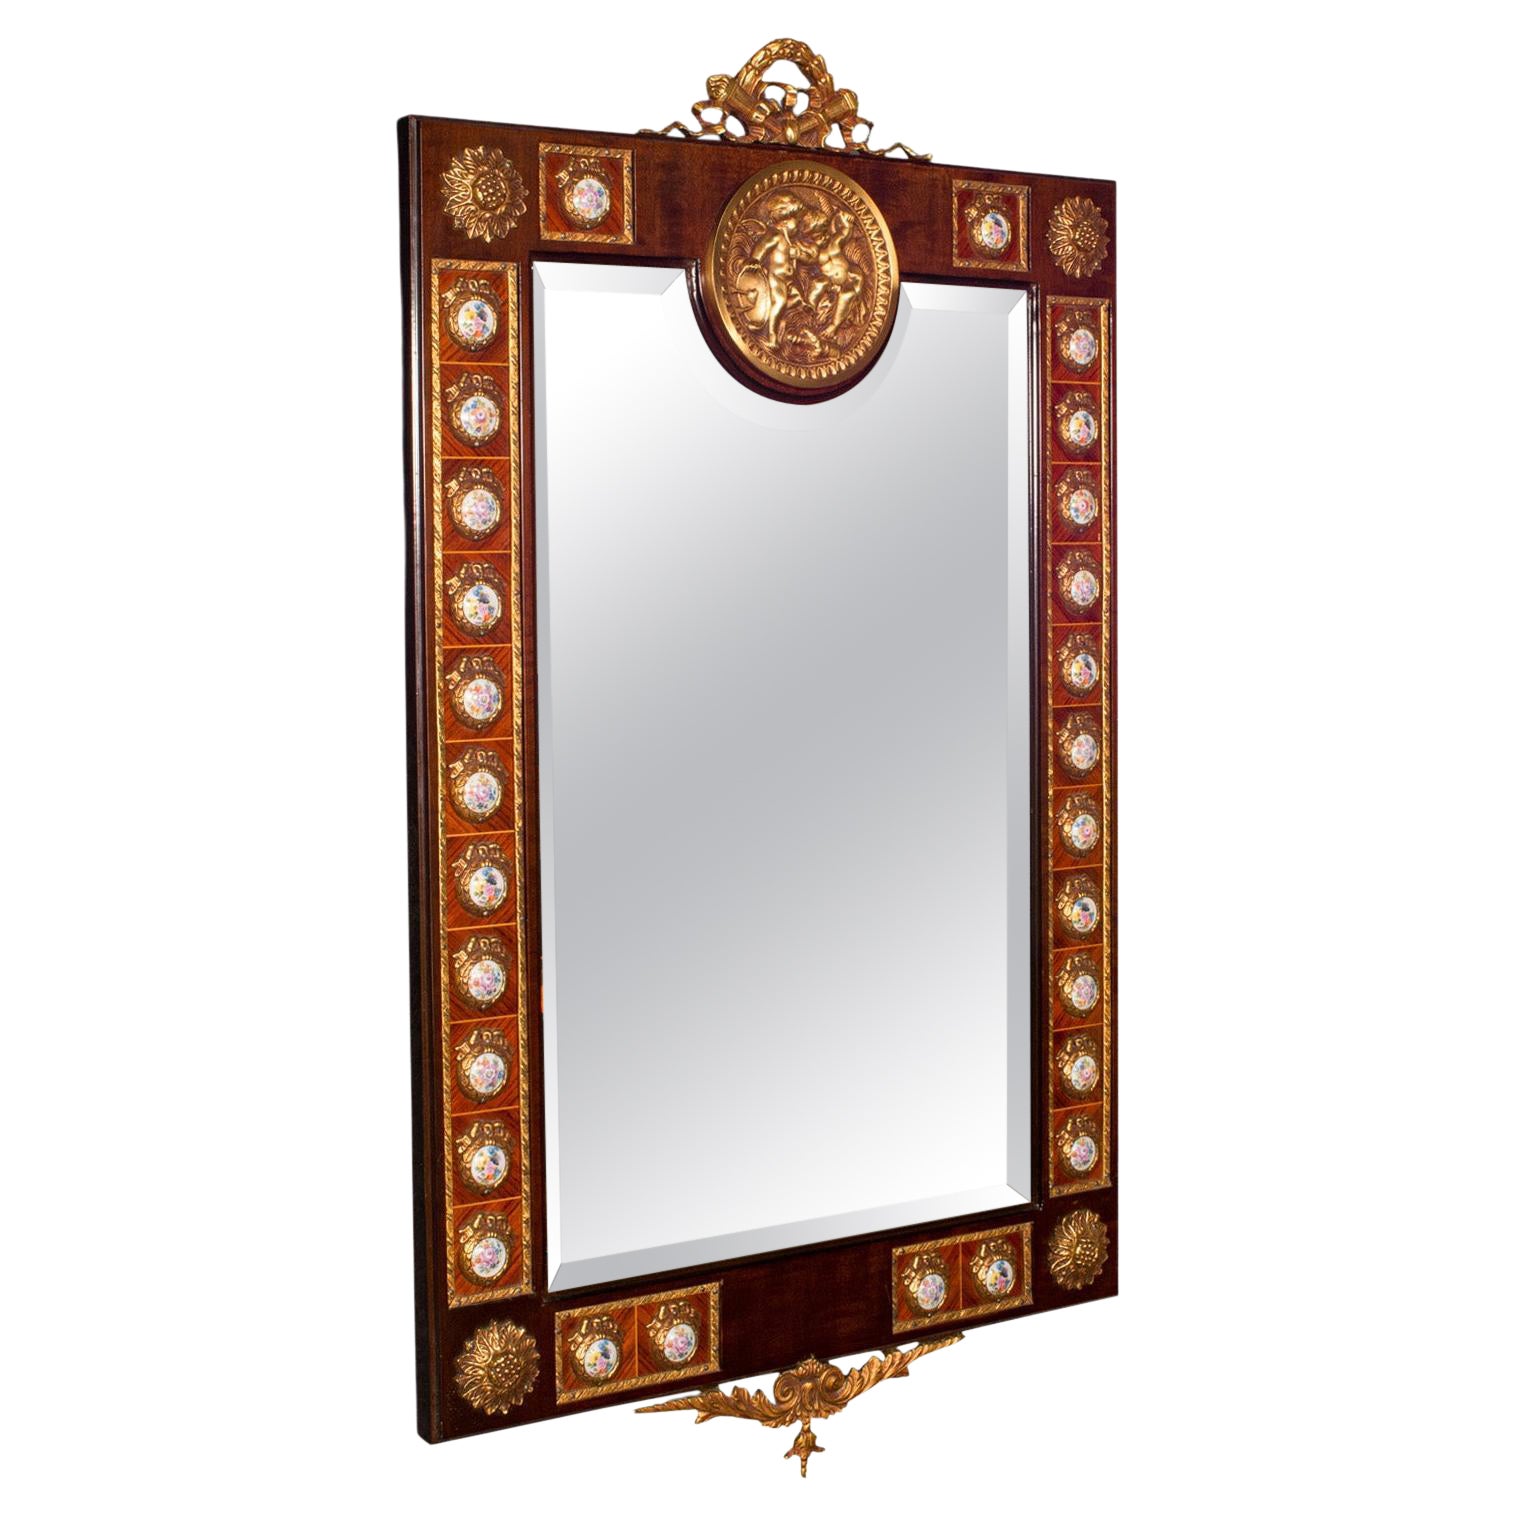 Großer Overmantle-Spiegel im Vintage-Stil, kontinental, Nussbaum, dekorativ, italienisch